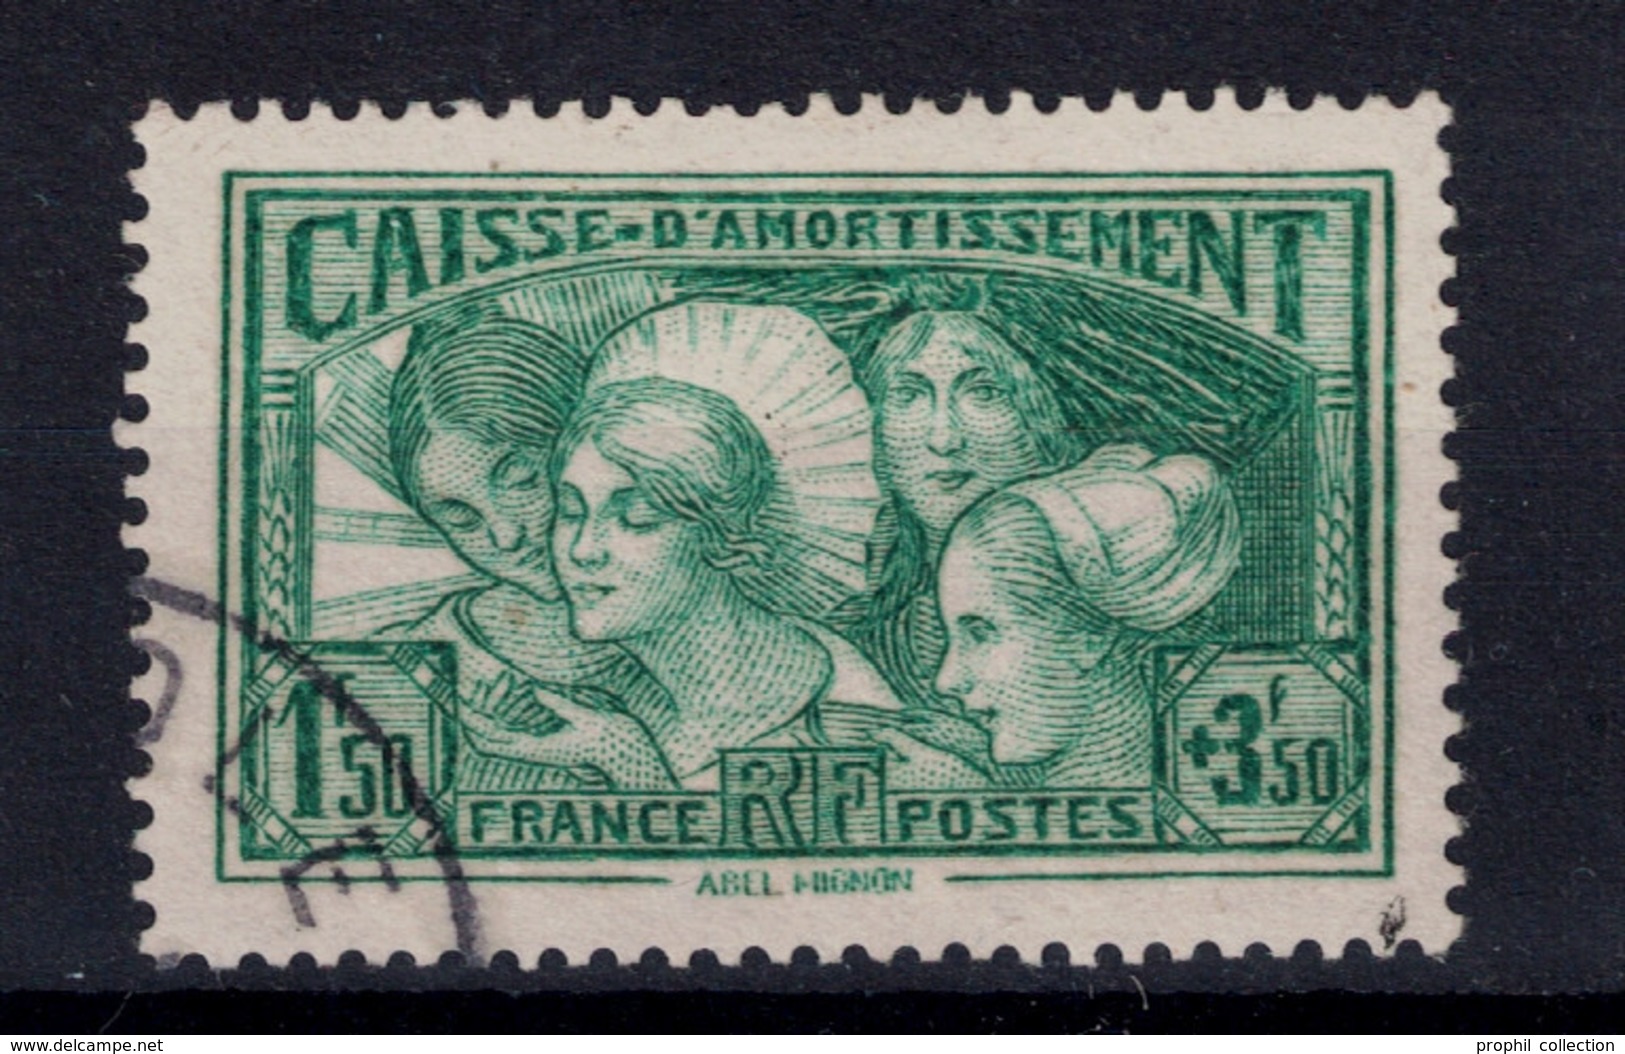 TIMBRE CAISSE D'AMORTISSEMENT N° 269 OBLITÉRÉ TB " LES COIFFES DE PROVINCES FRANCAISES " - Used Stamps